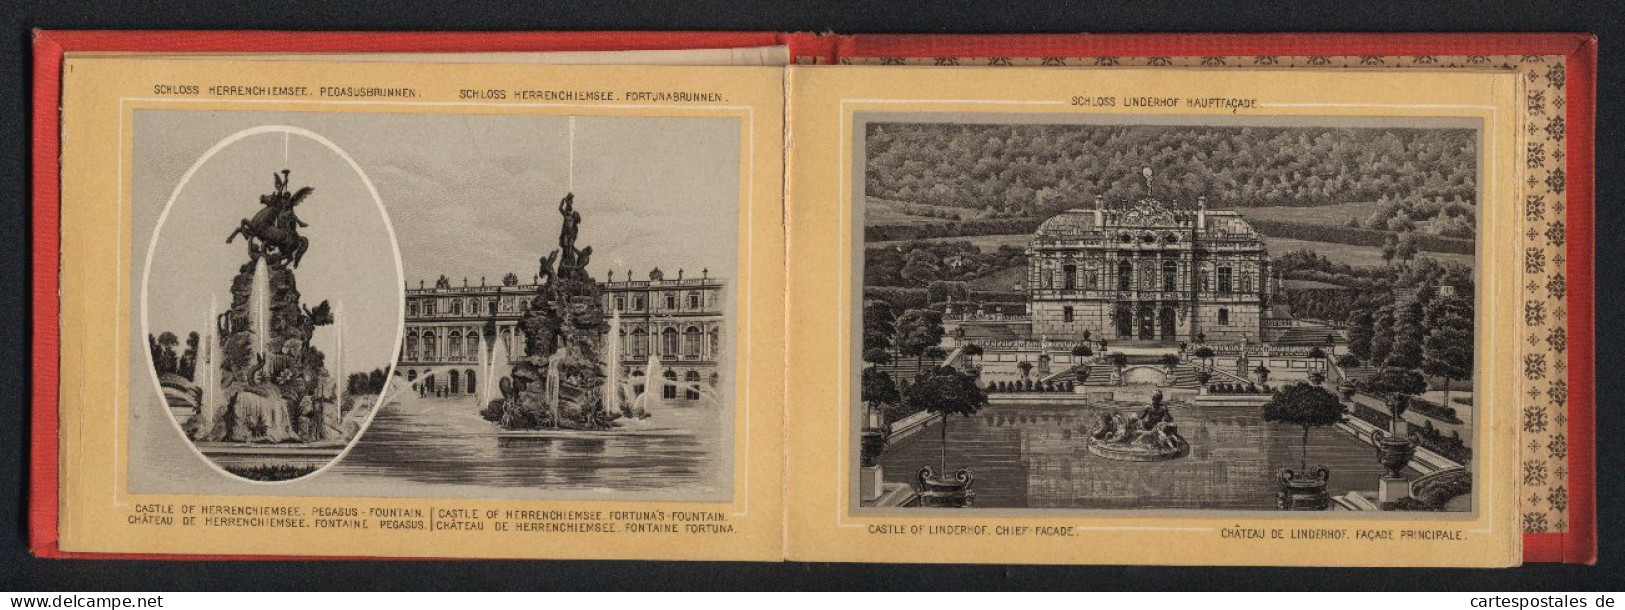 Leporello-Album Lieblingsschlösser König Ludwig II. Mit 17 Lithographie-Ansichten, Linderhof, Kiosk, Neuschwanstein,  - Lithographies